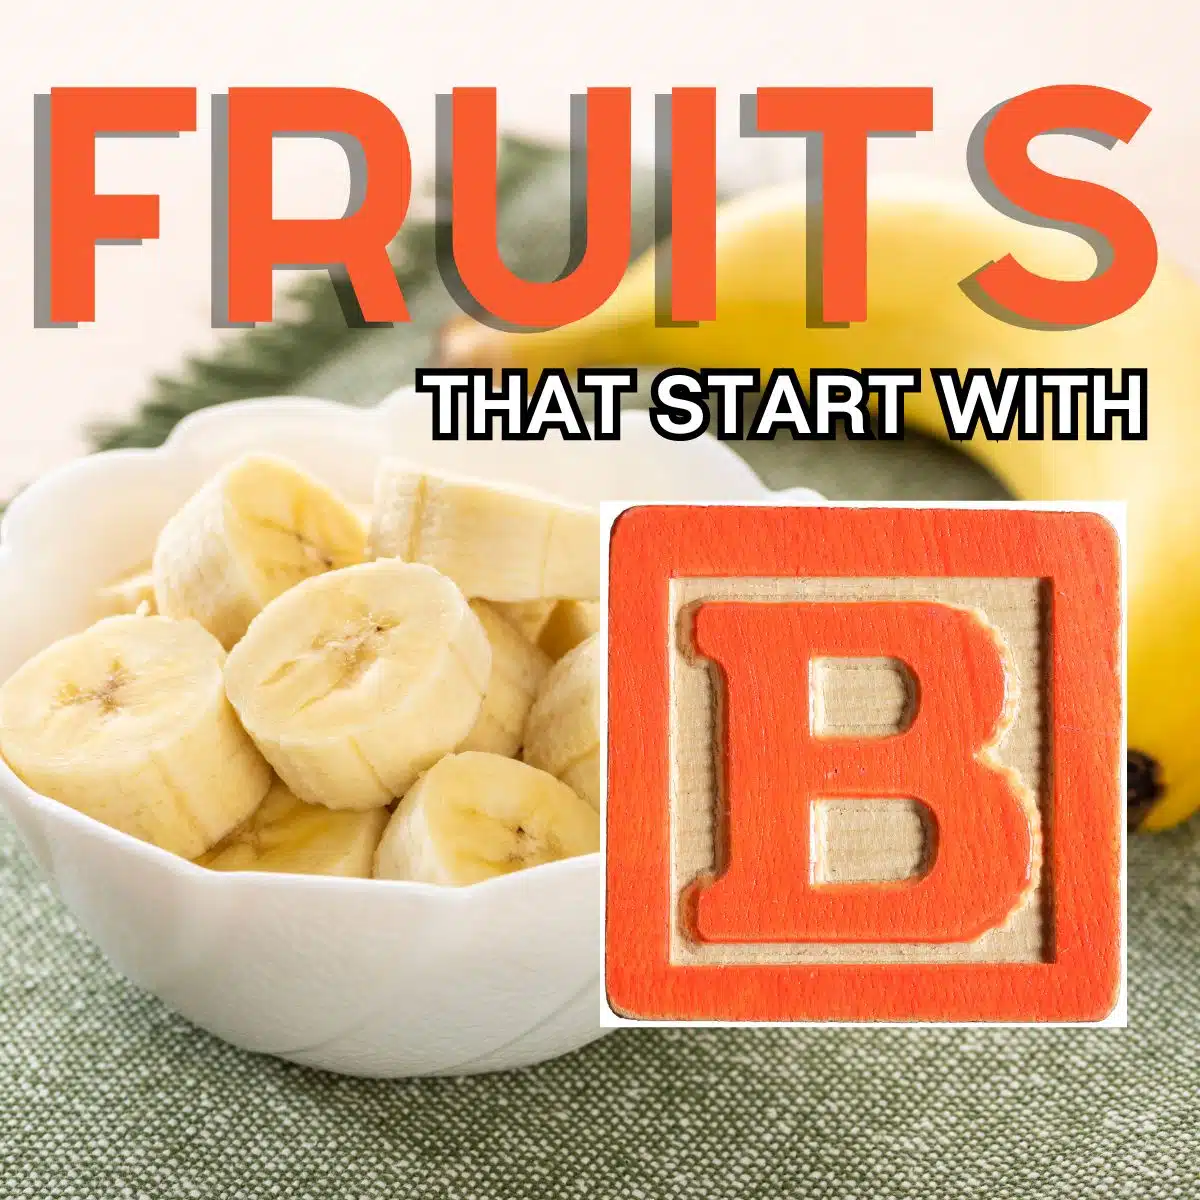 바나나가 특징인 문자 B로 시작하는 과일의 정사각형 이미지입니다.